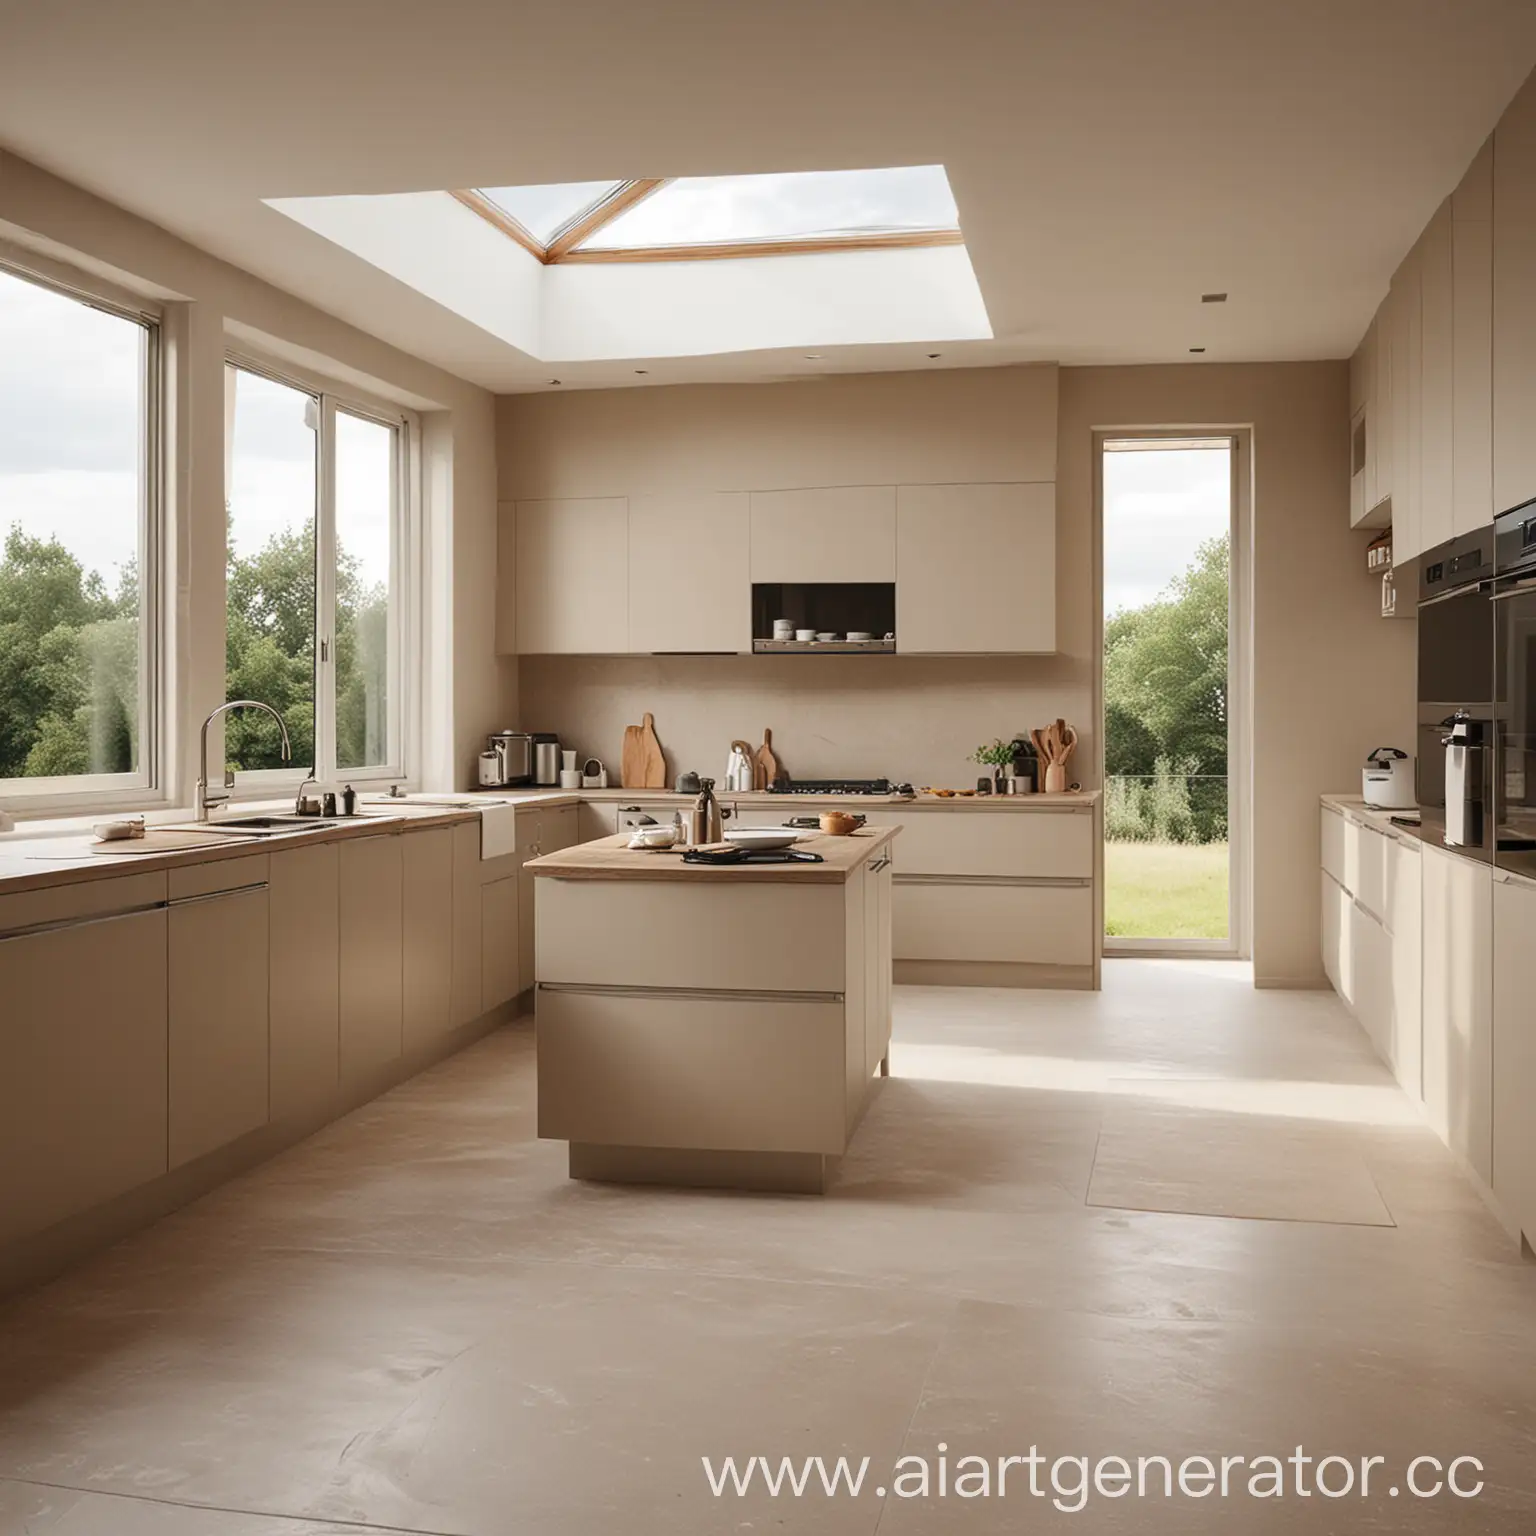 Реалистичный дизайн совмещенной кухни и гостиной в минималистическом стиле, в спокойных песочных оттенках, с панорамными окнами